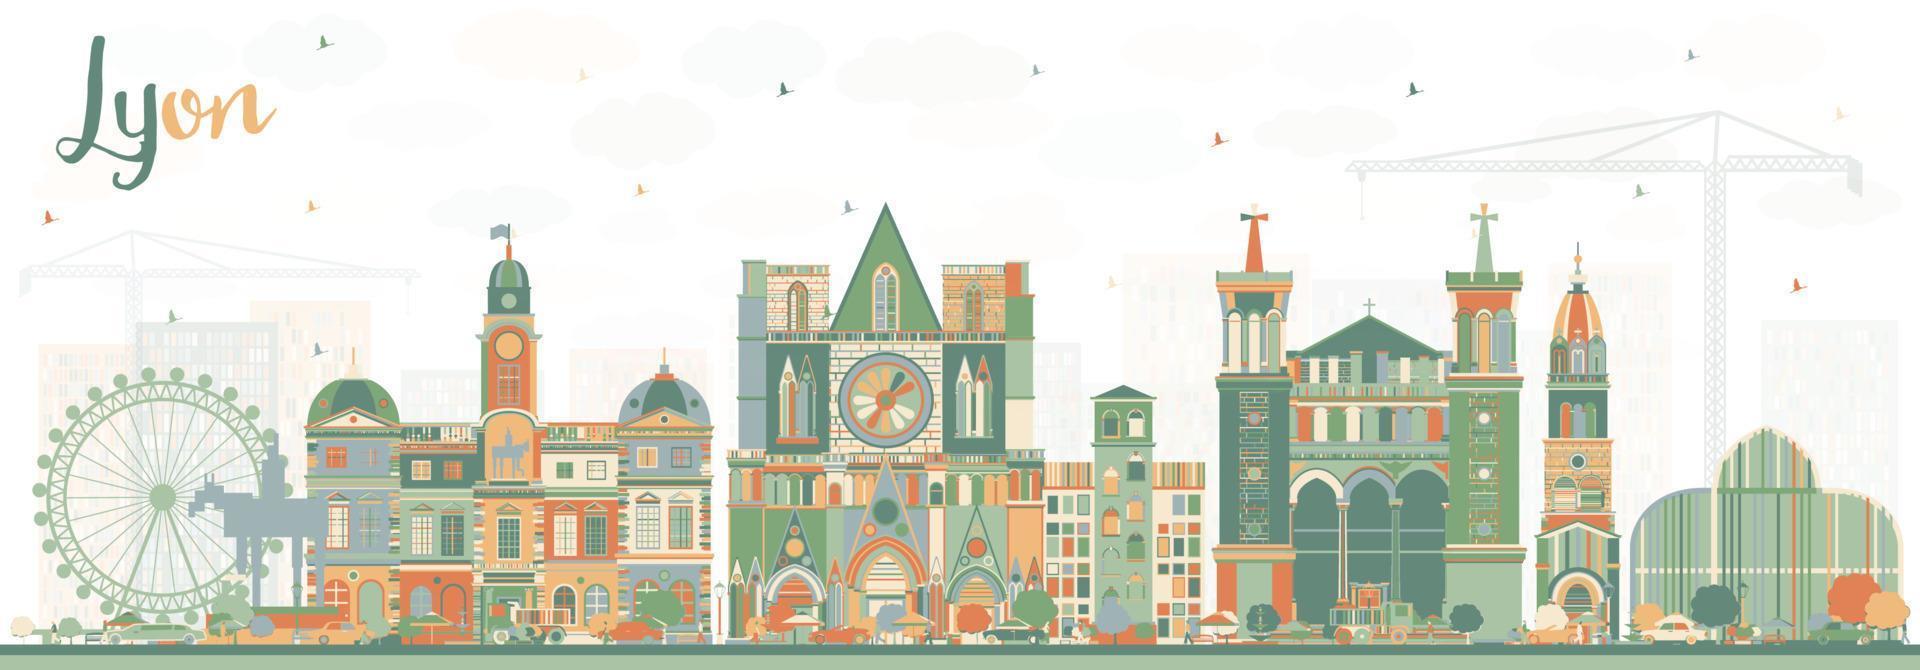 skyline da cidade de lyon france com edifícios coloridos. vetor